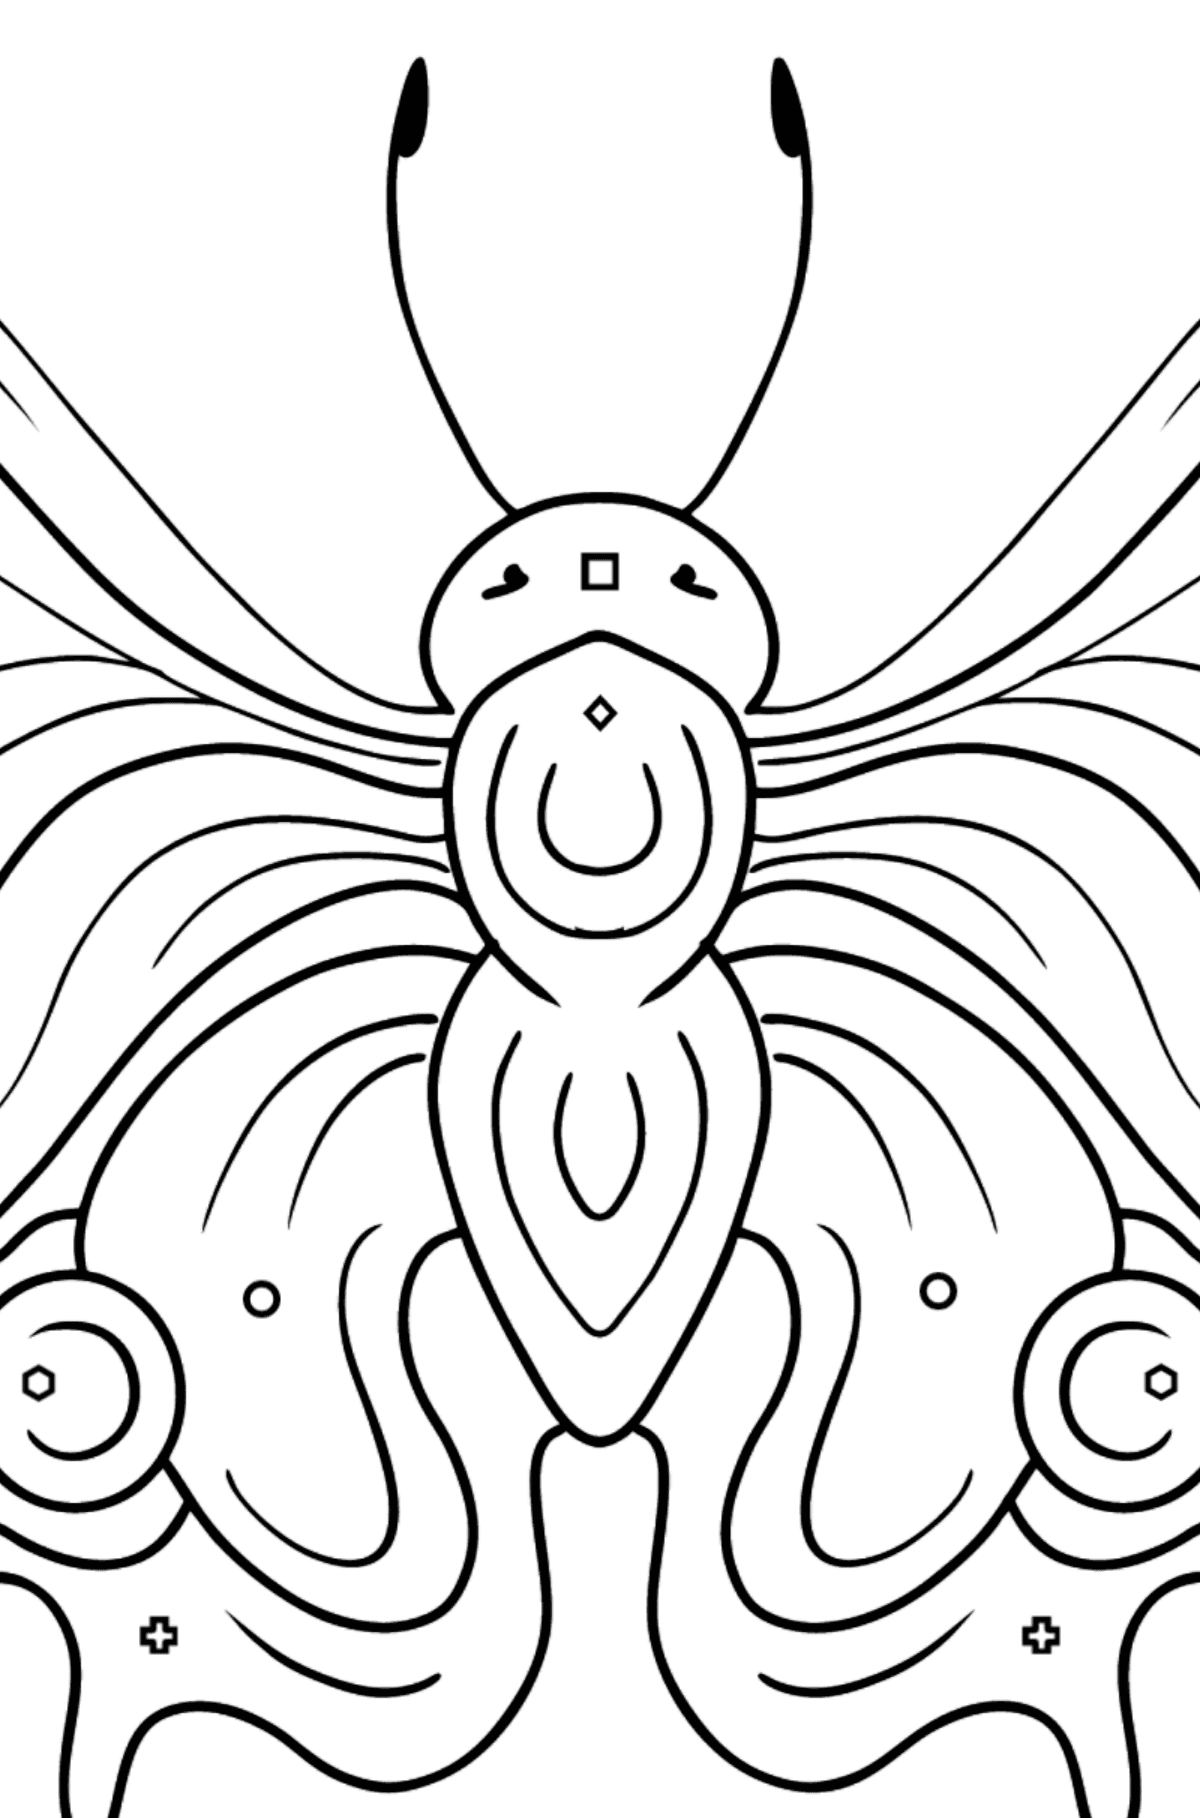 Kolorowanka Paw motyl - Kolorowanie według figur geometrycznych dla dzieci